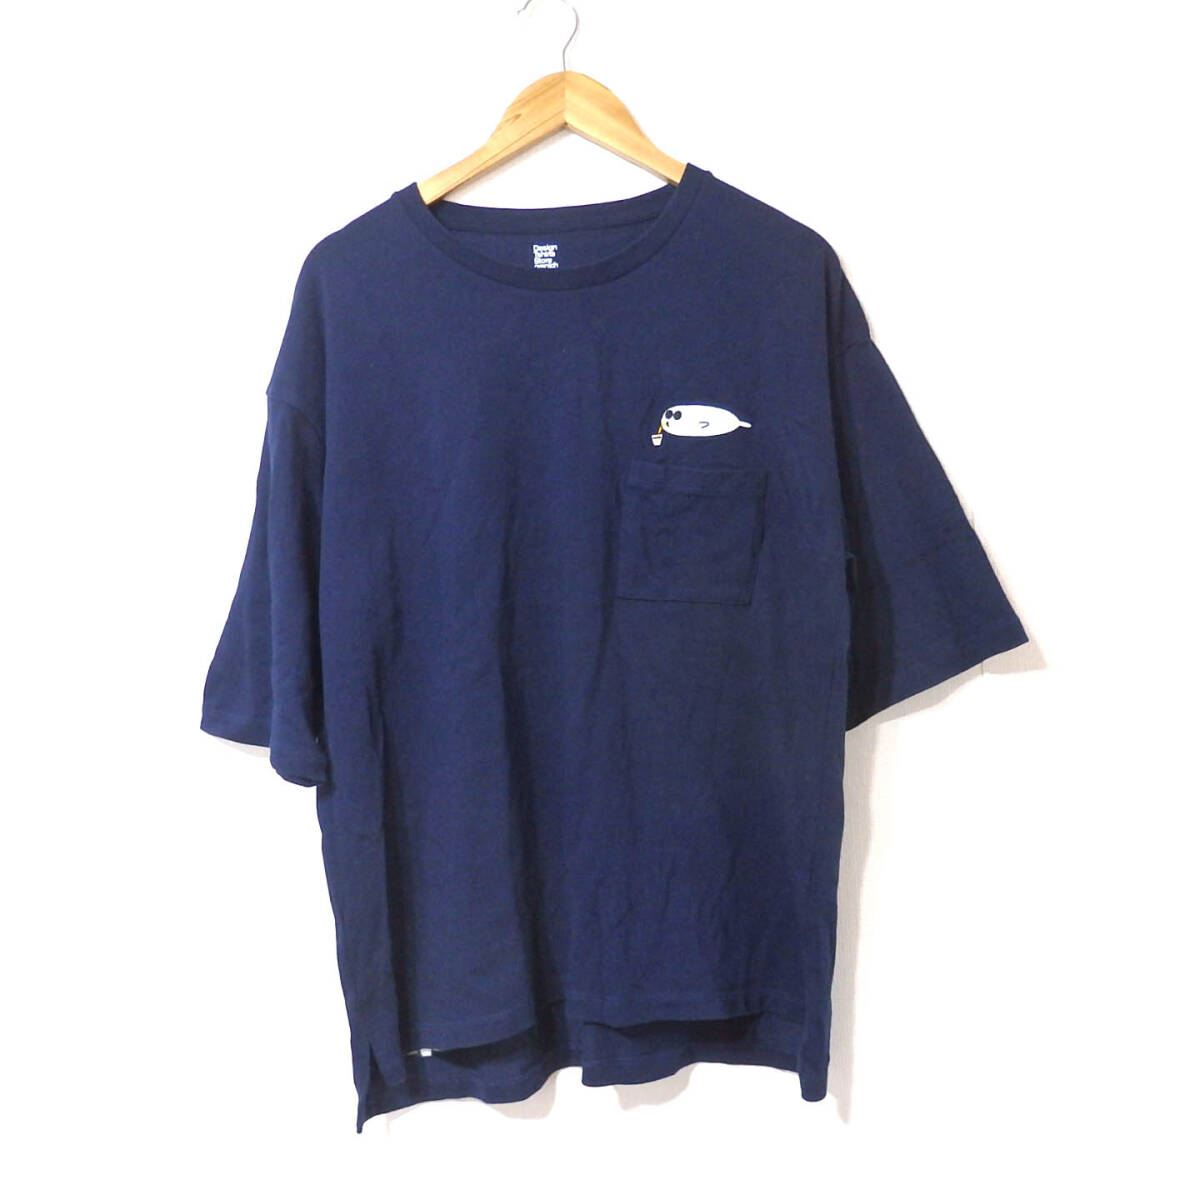 【送料無料】グラニフTシャツ/美品 厚手 ゆったりめ アザラシ  紺色 Design Tshirts Store graniphの画像1